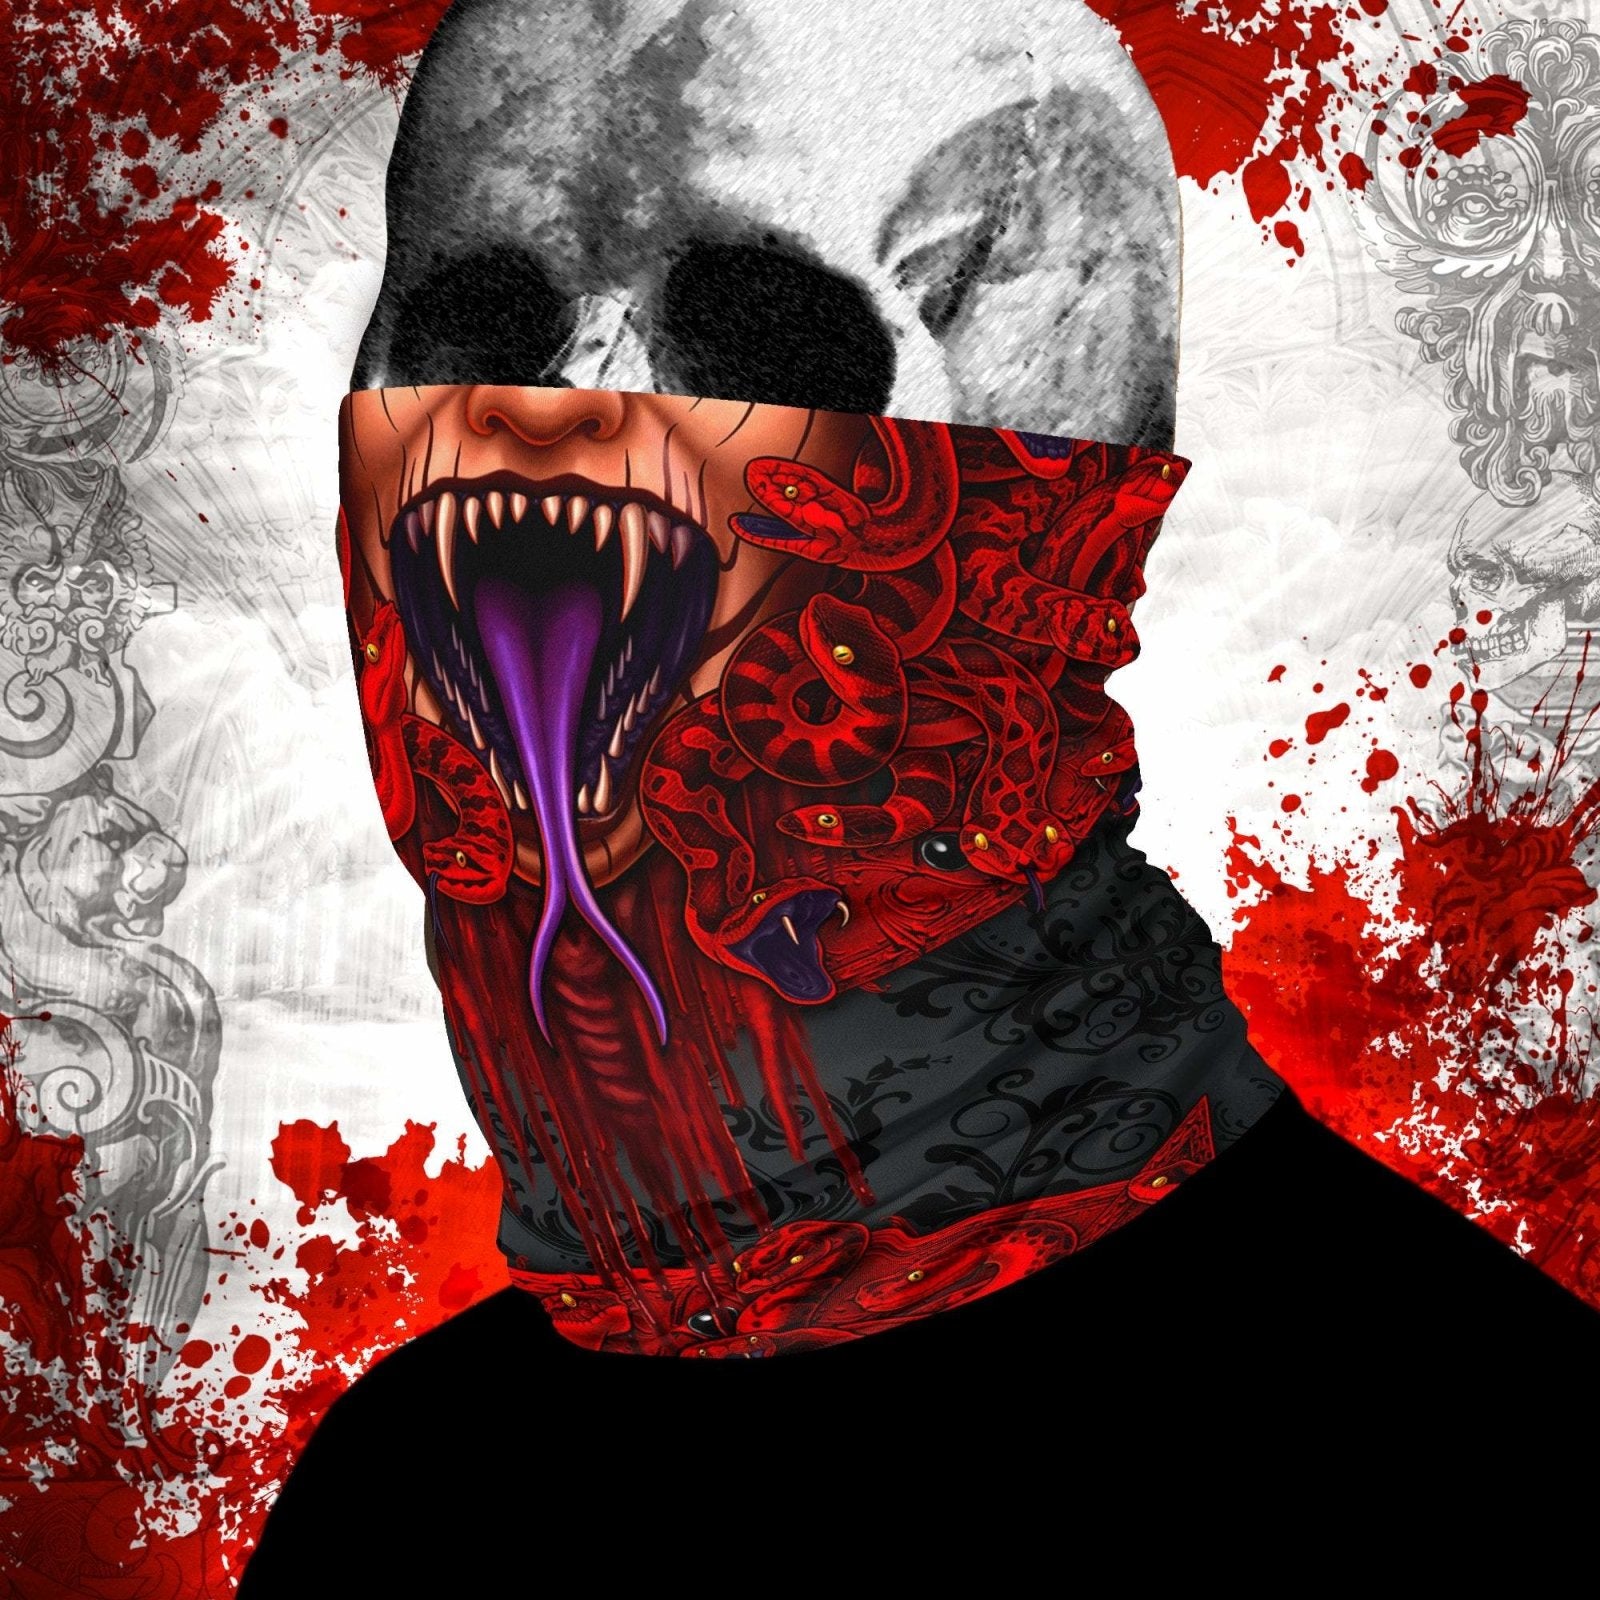 Demon Neck Gaiter, Face Mask, Head Covering, Snakes Headband, Medusa, Satanic, Skull Art - Pentagram, 3 Face Options - Abysm Internal